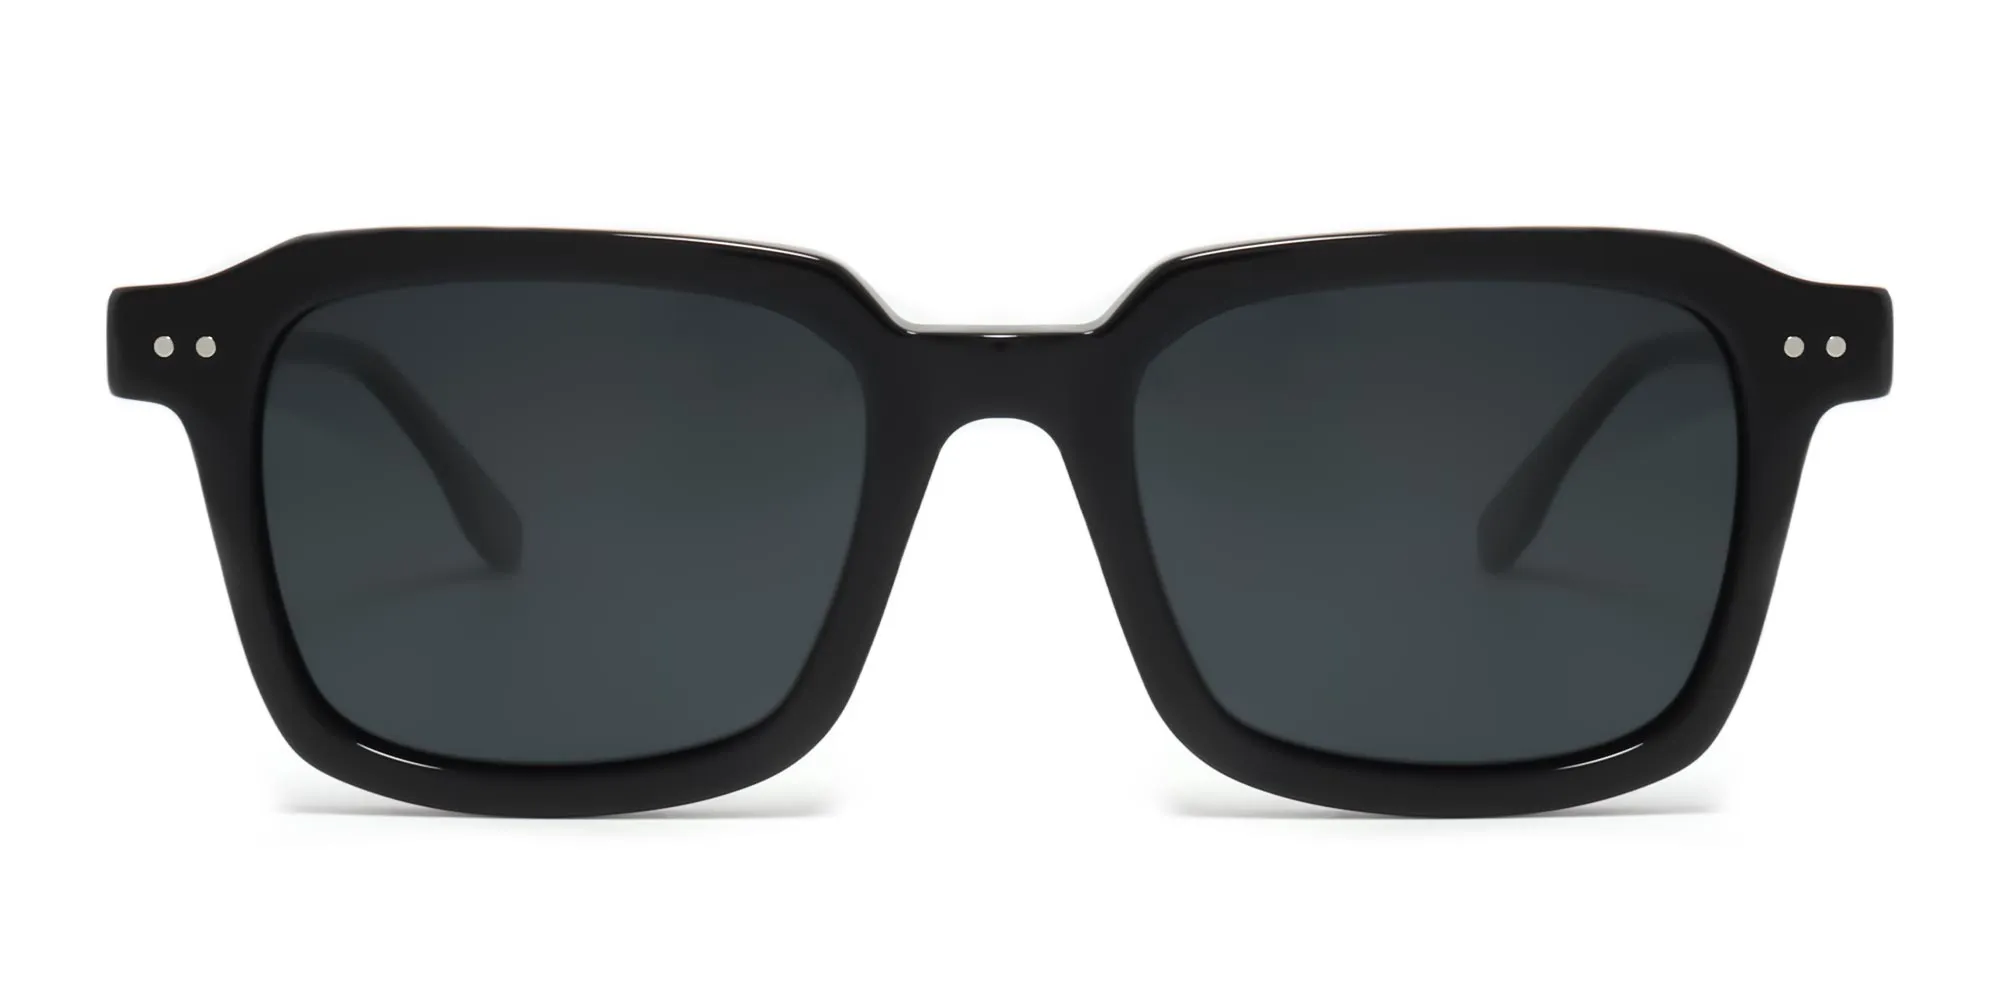 HENRY 1 - Buy Black Square Sunglasses For Men & Women | Specscart.®